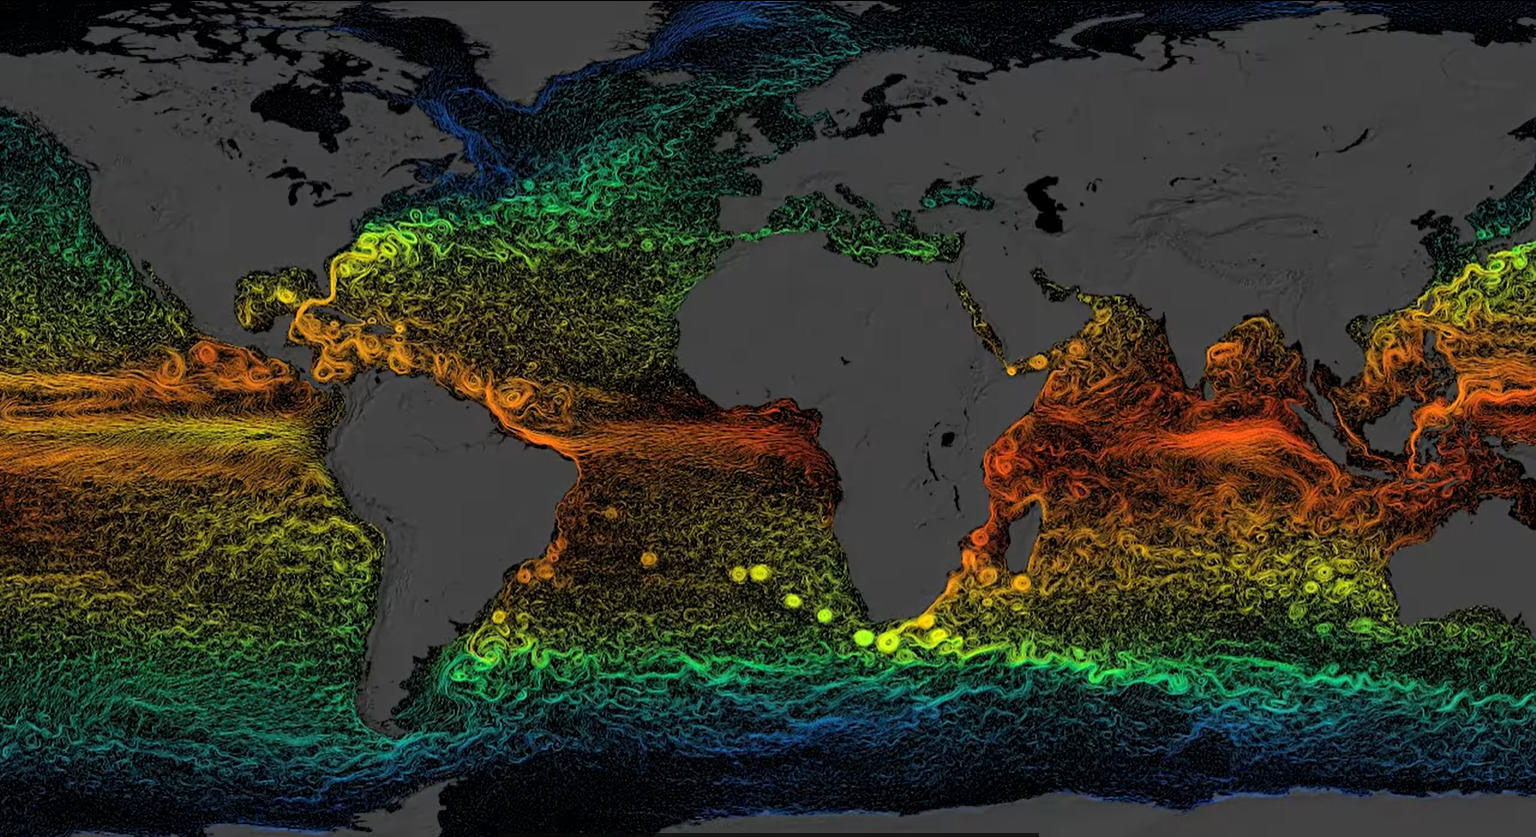 Imagem mostra as correntes do Atlântico Norte, com cores diferentes para indicar águas mais quentes em laranja e águas mais frias em verde e azul. Em cinza, estão representados os continentes. — Foto: NASA GODDARD SPACE FLIGHT CENTER